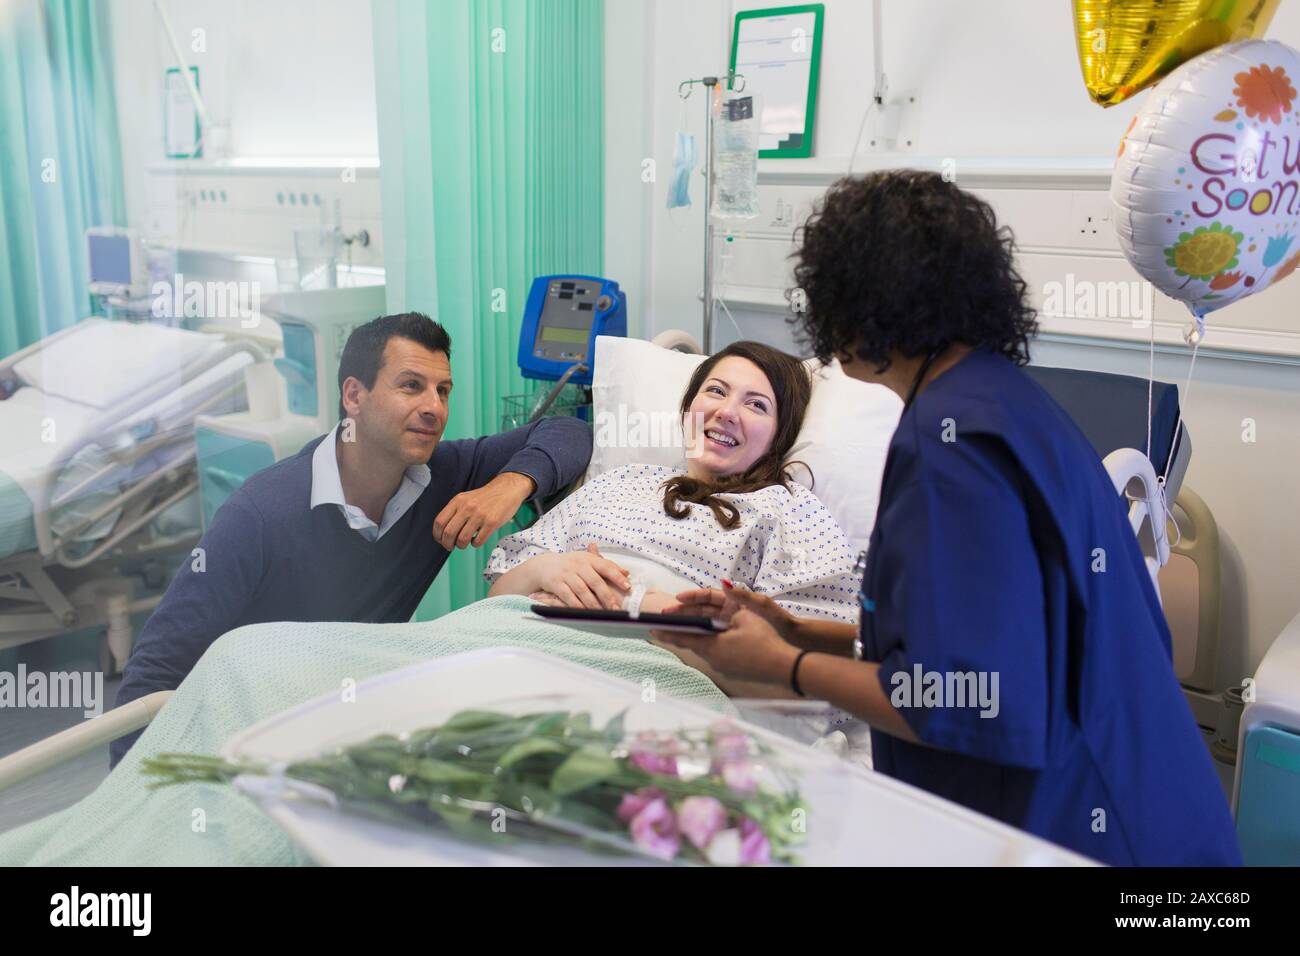 Médecin avec tablette numérique en train de faire des rondes, en parlant avec un couple dans le service hospitalier Banque D'Images